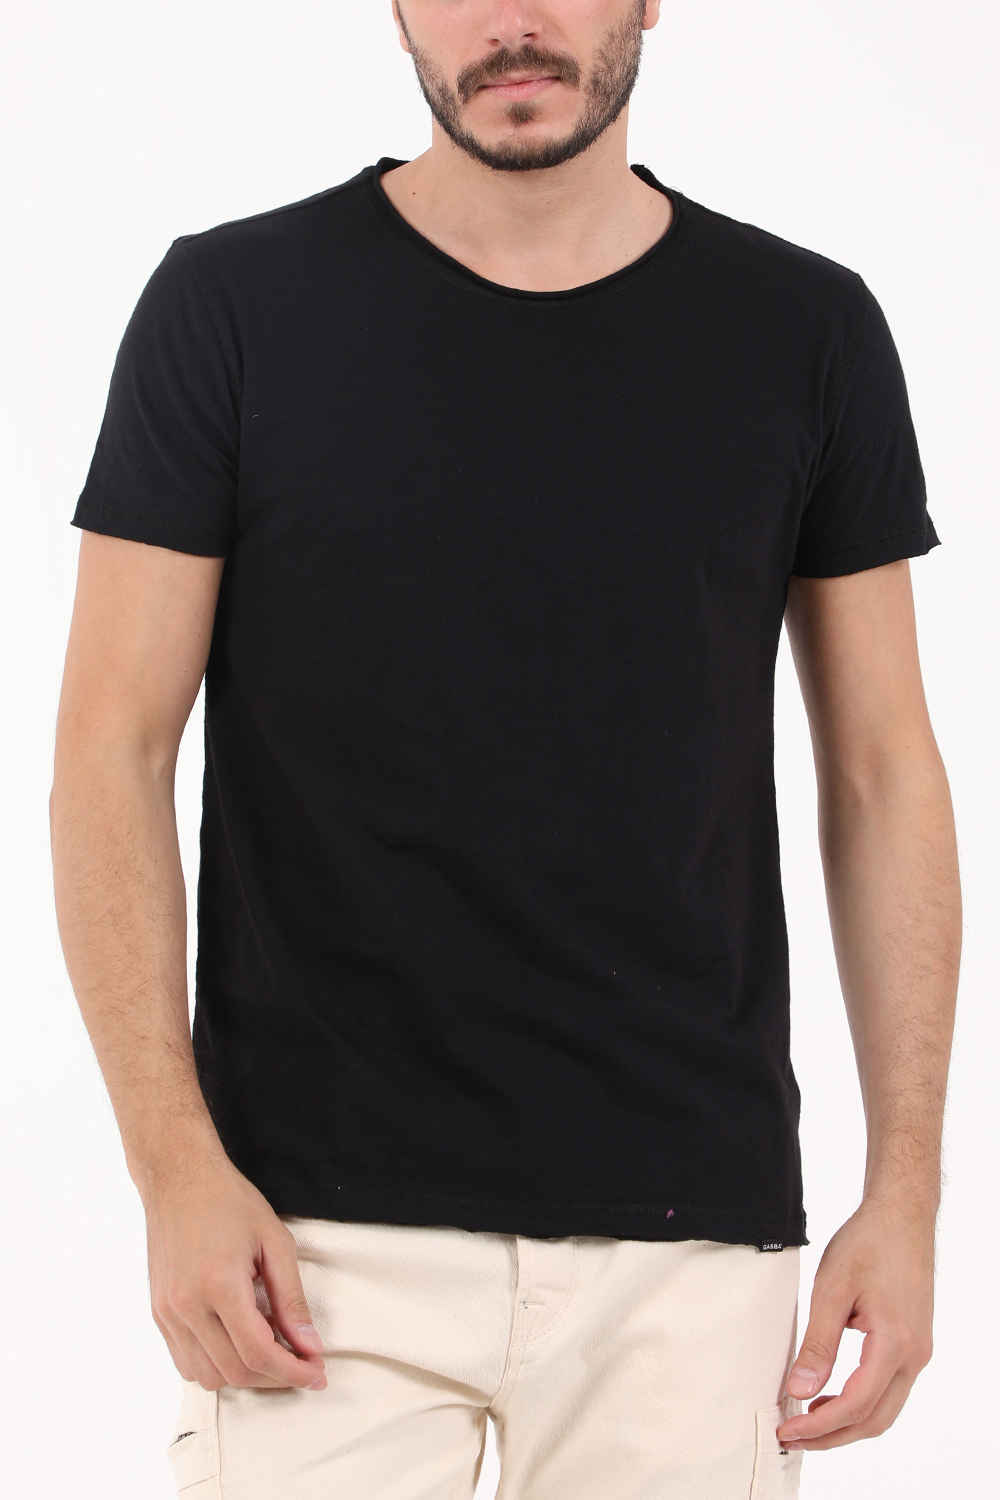 Ανδρικά/Ρούχα/Μπλούζες/Κοντομάνικες GABBA - Ανδρικό t-shirt GABBA Konrad Straight μαύρο